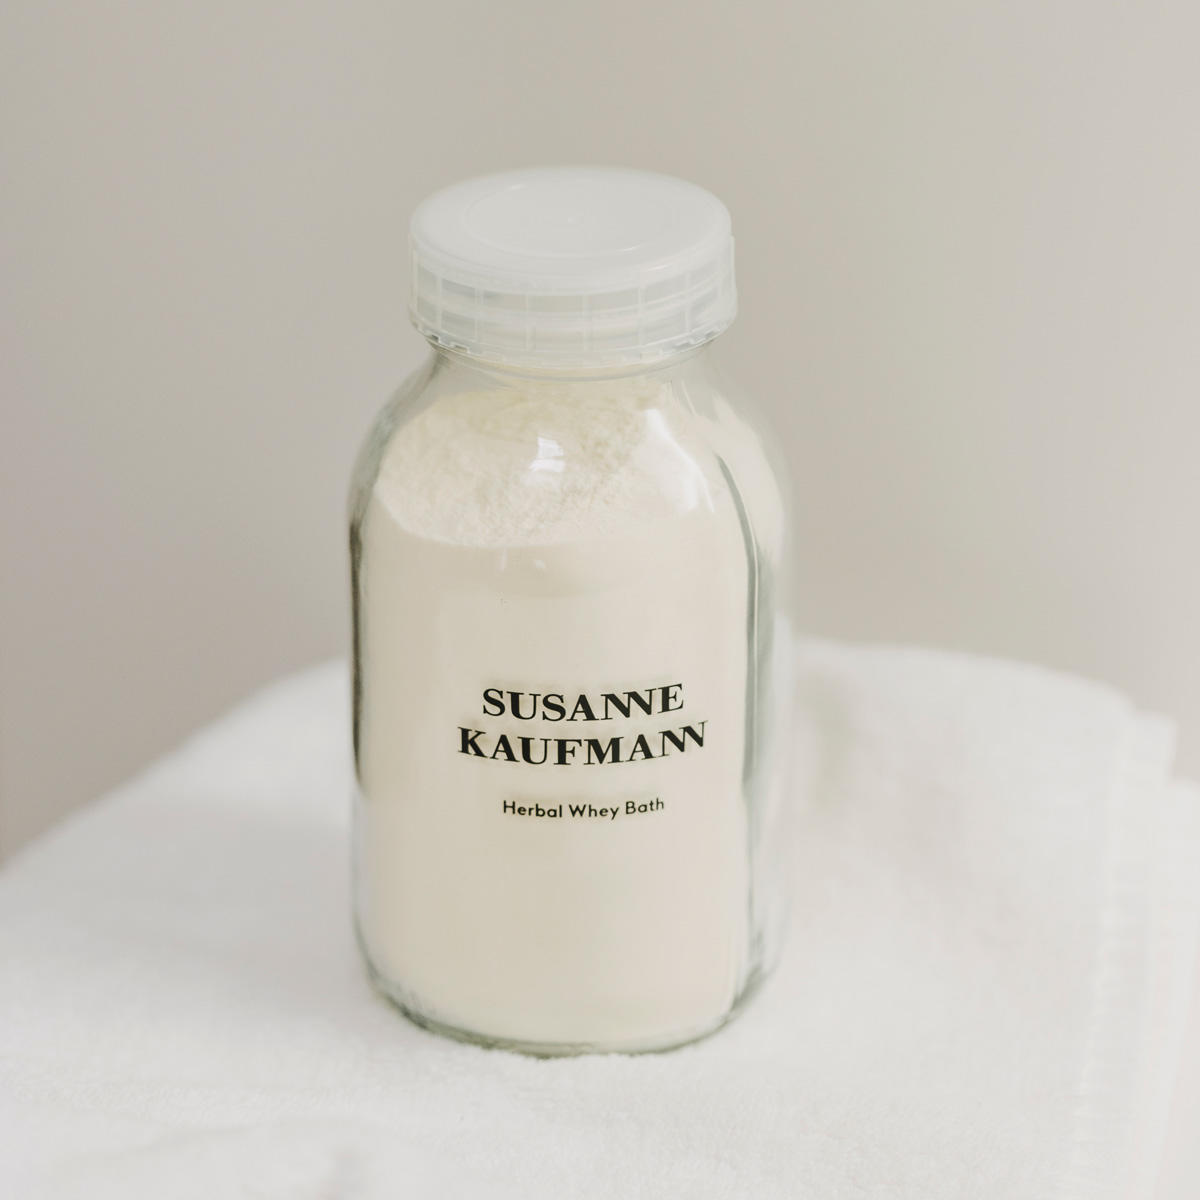 Susanne Kaufmann Bain de lactosérum à base de plantes - Herbal Whey Bath 300 g - 3